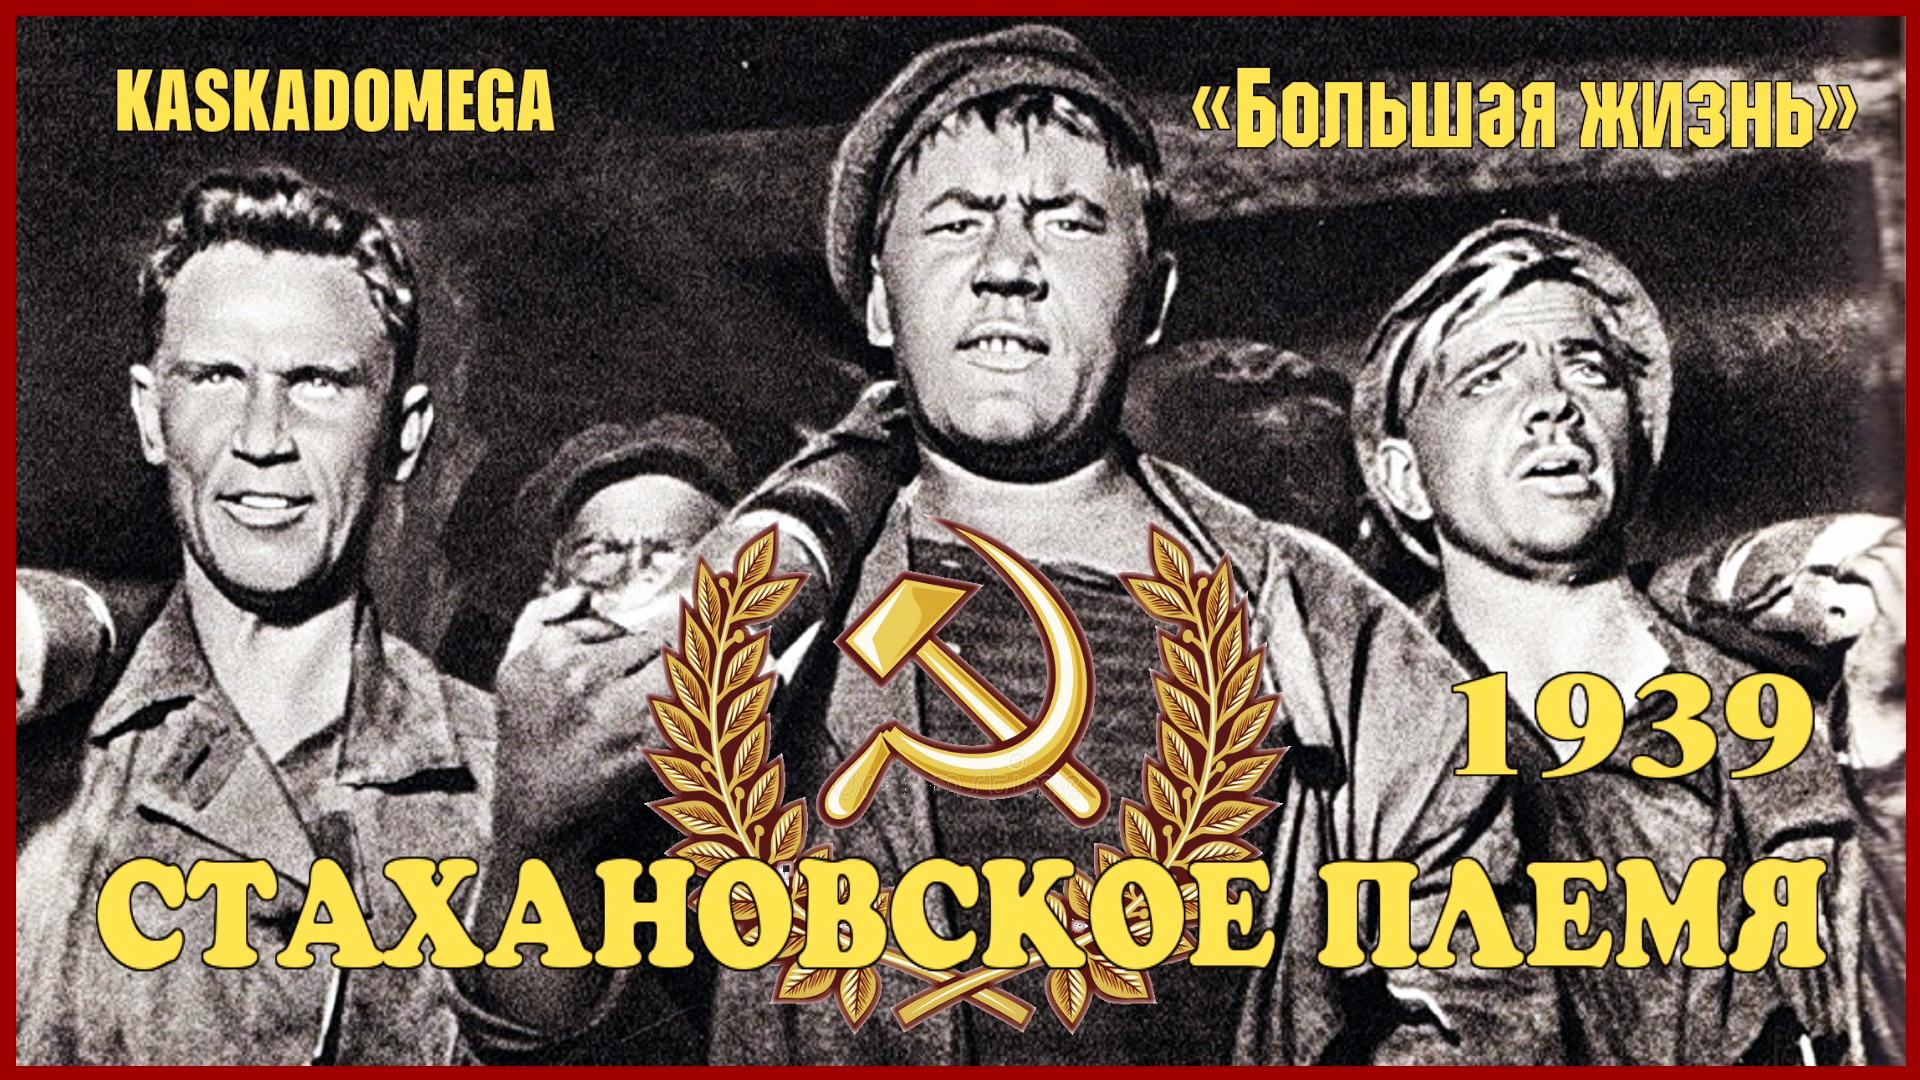 «Большая жизнь» - Стахановское племя (1939)